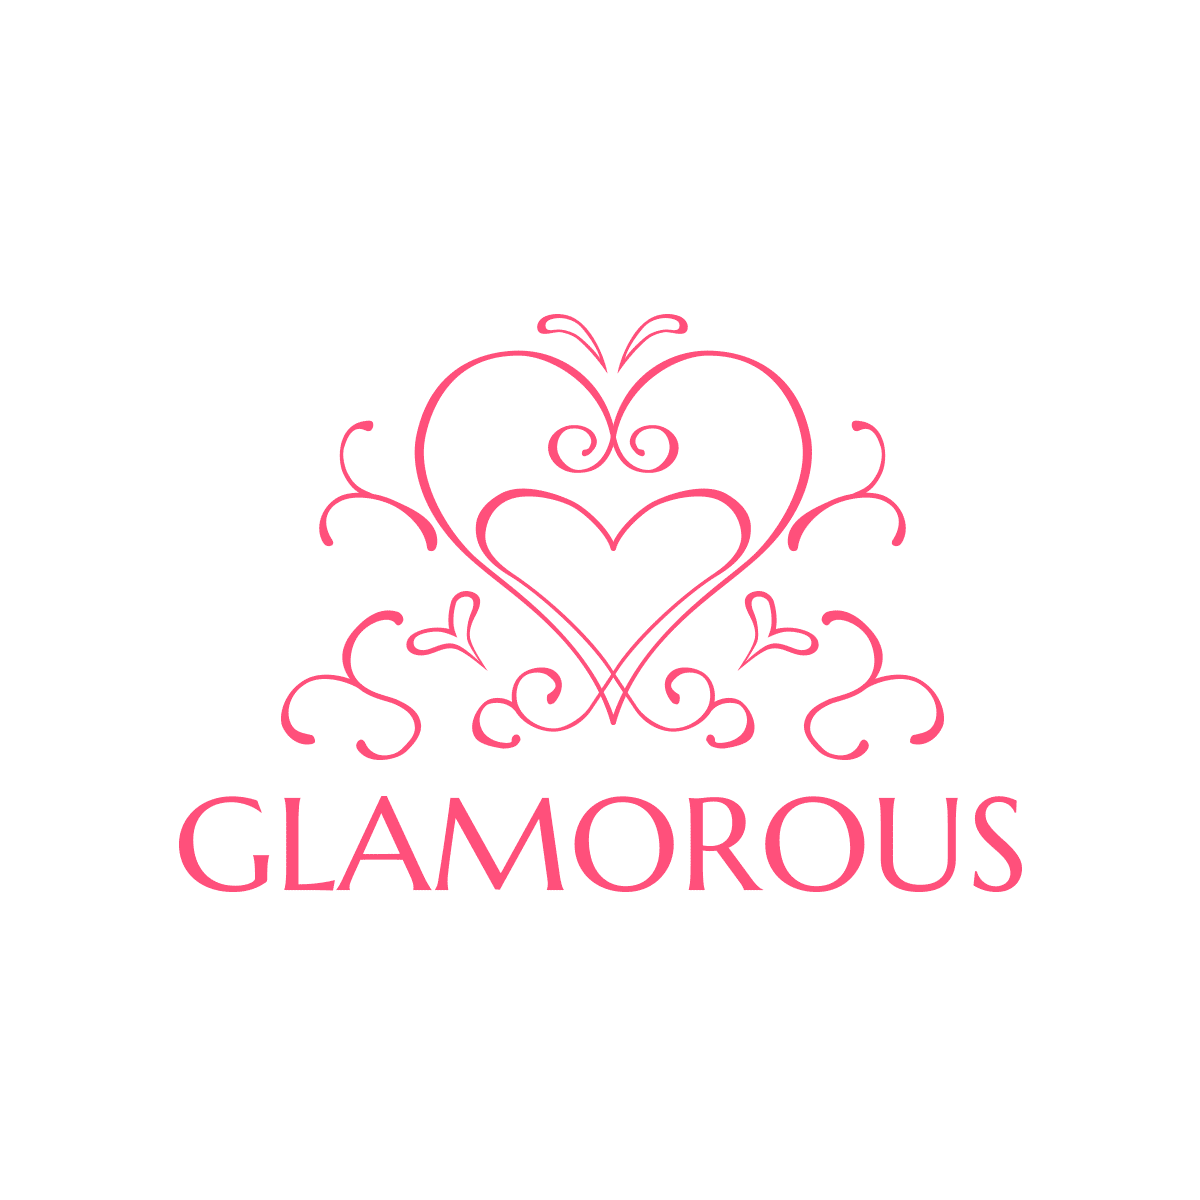 Glamorous（グラマラス）は、福岡市博多区住吉にあるゲイバー・ミックスバーです。合コンや結婚式二次会・パーティー会場としてもご利用頂けます。